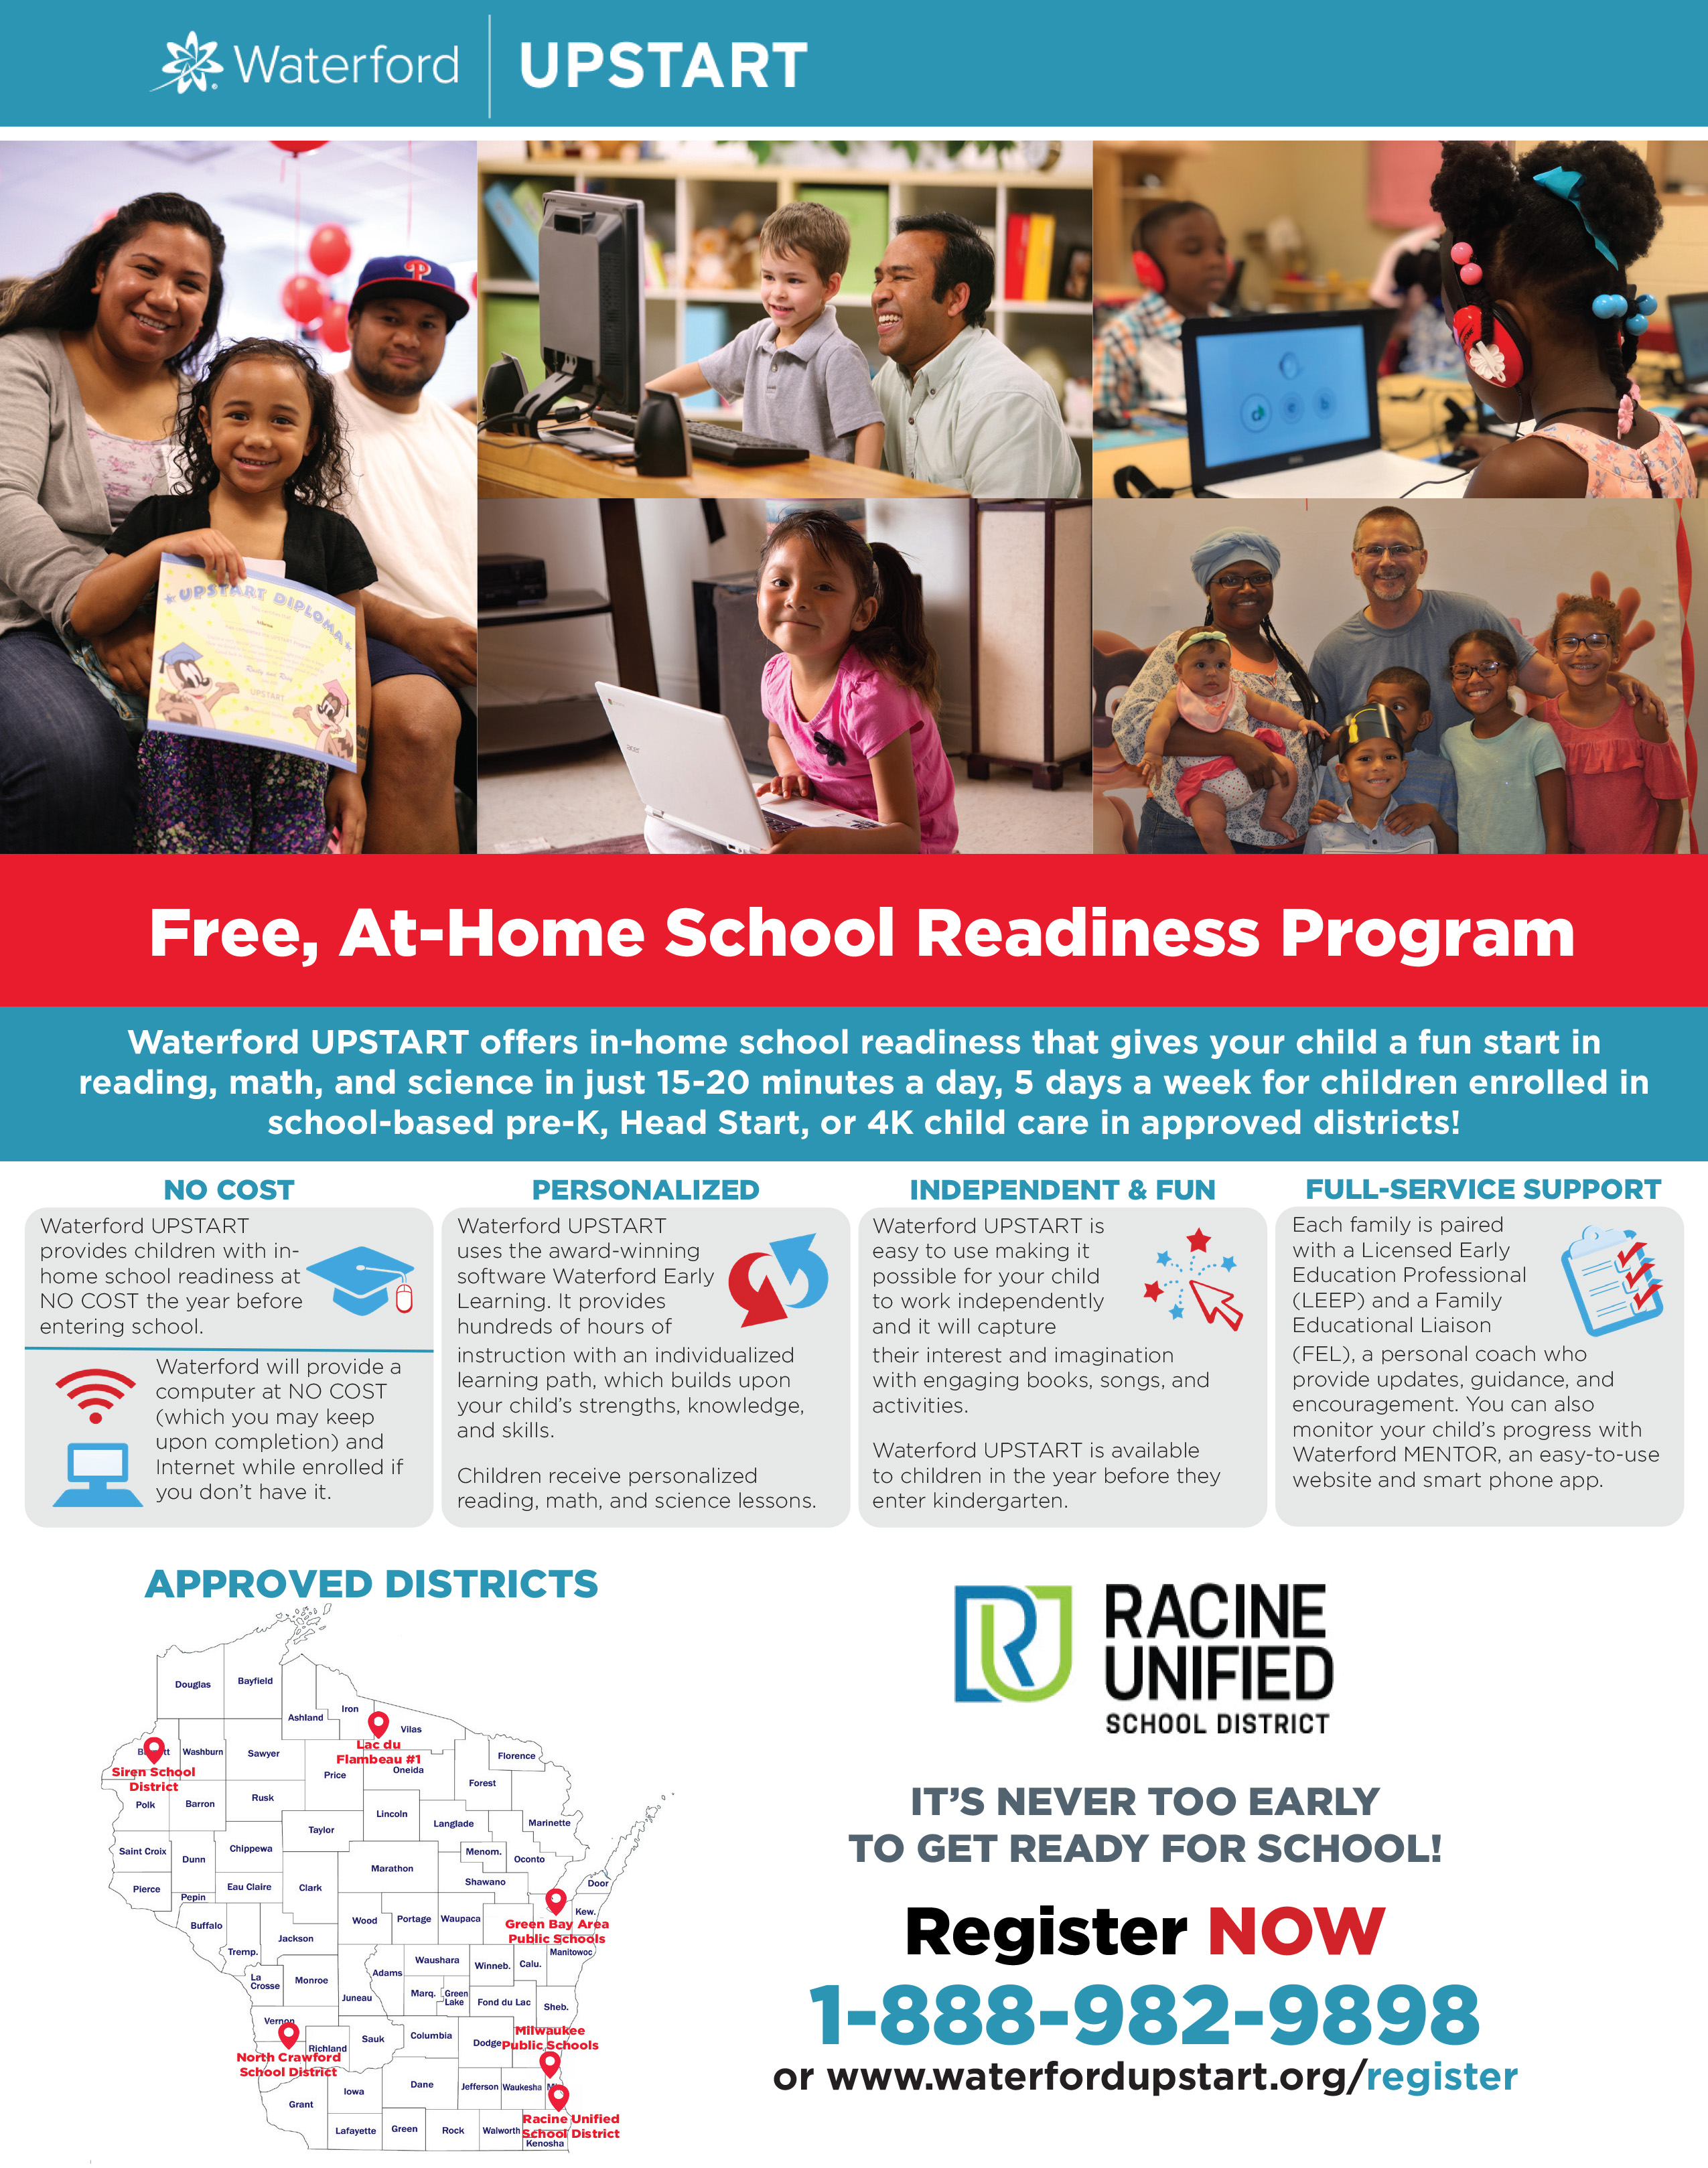 Racine Unified School District FREE Kindergarten Readiness Program For